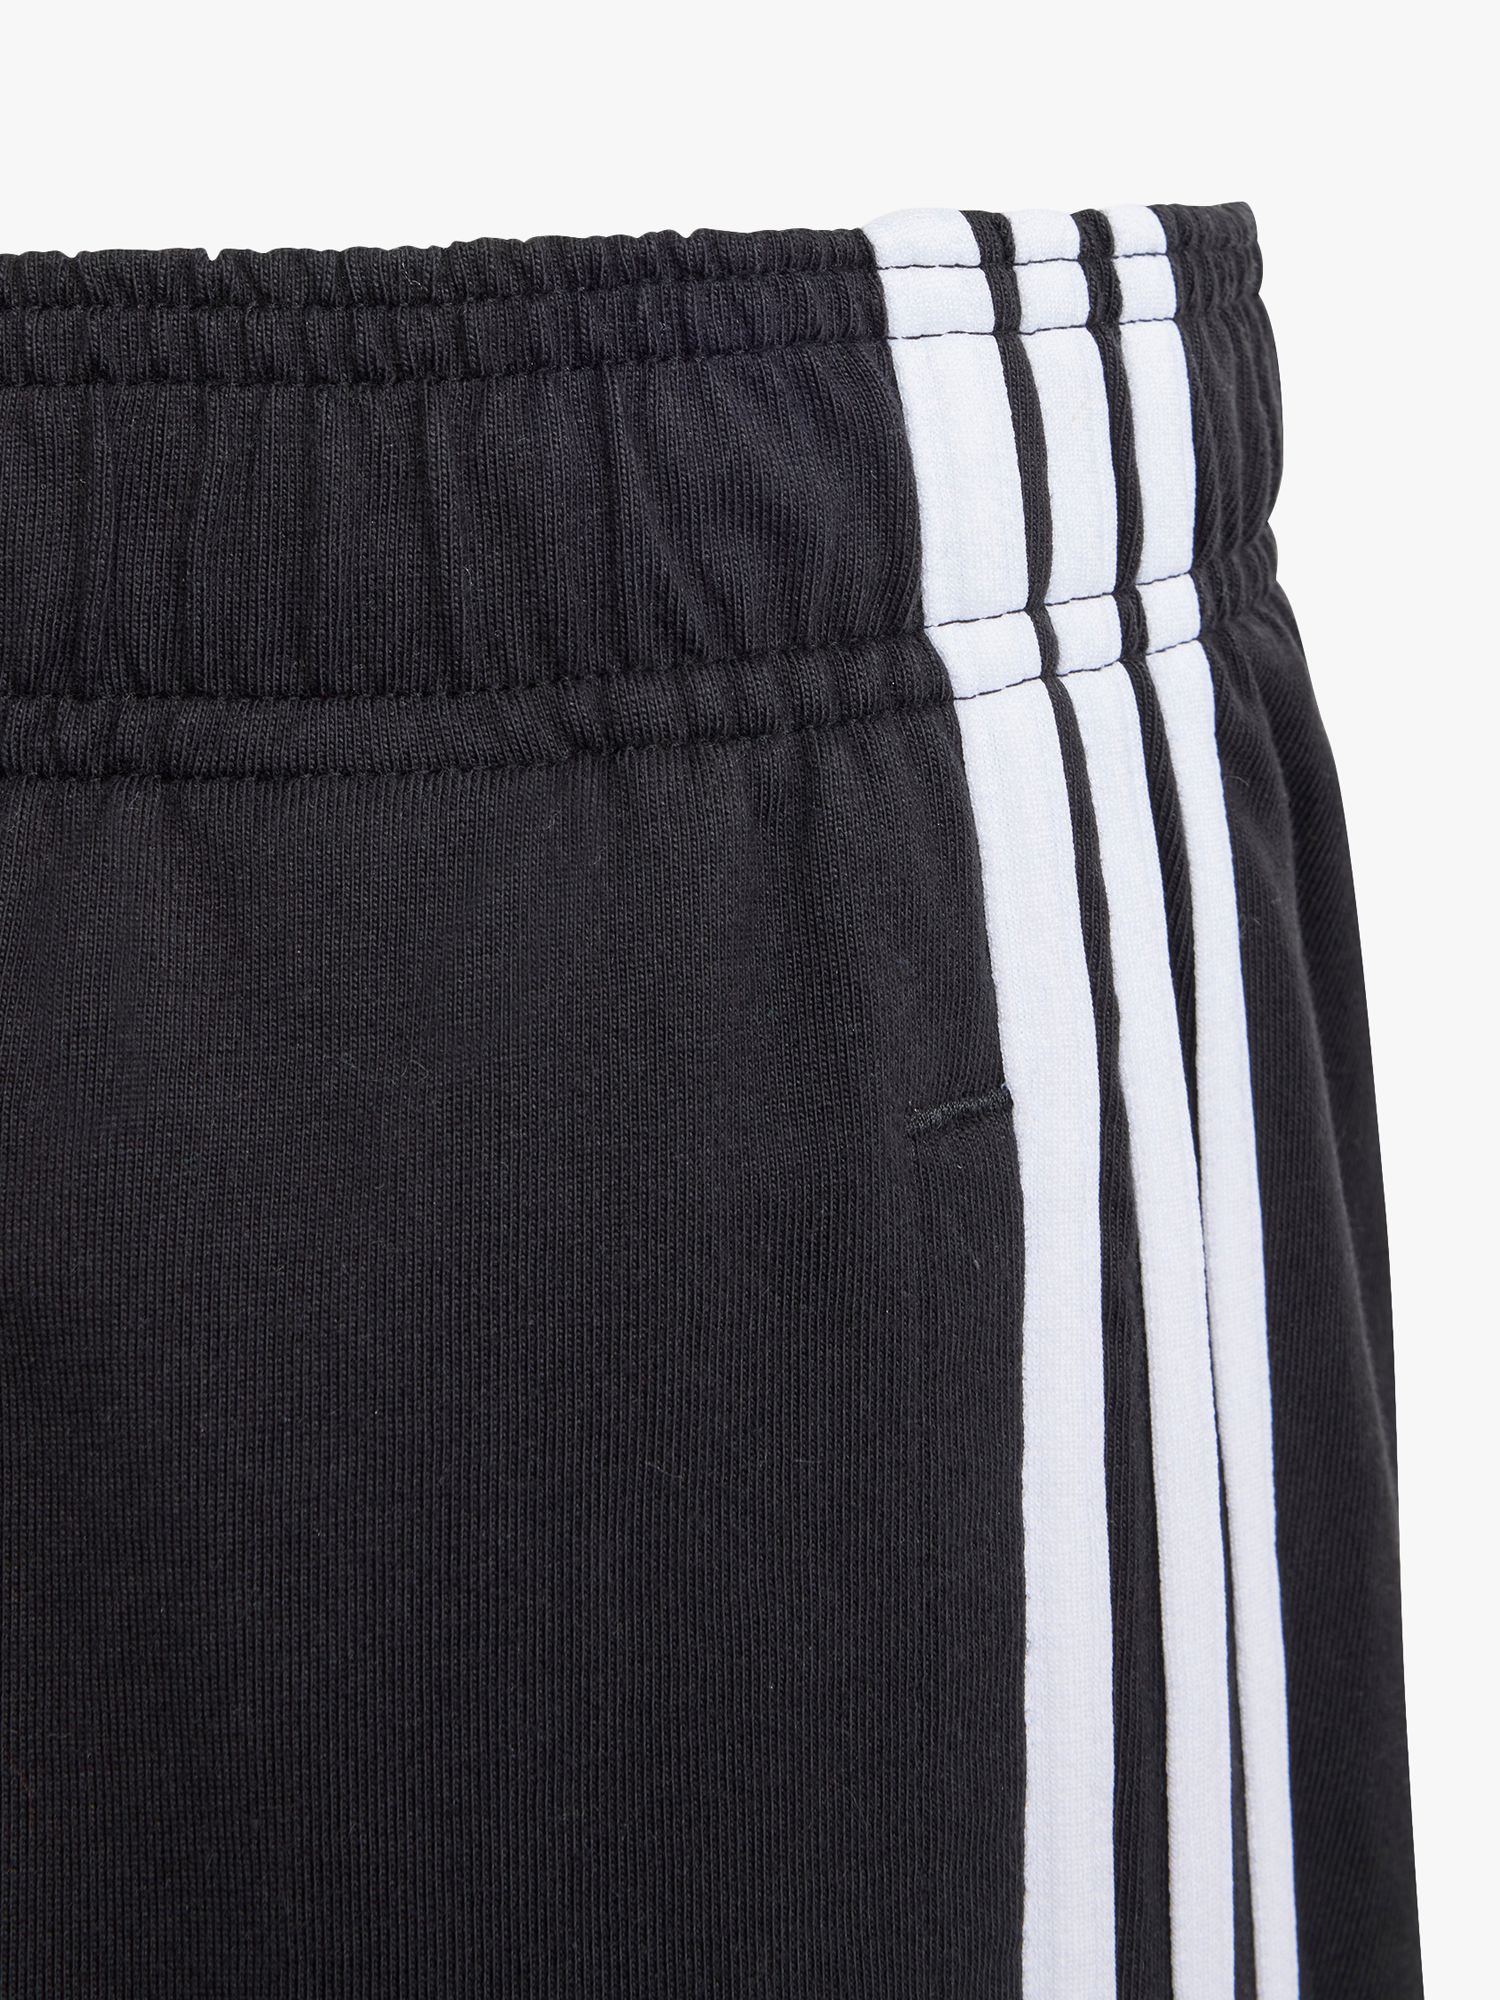 adidas Kids' Stripe Cotton Shorts, Black at John Lewis & Partners